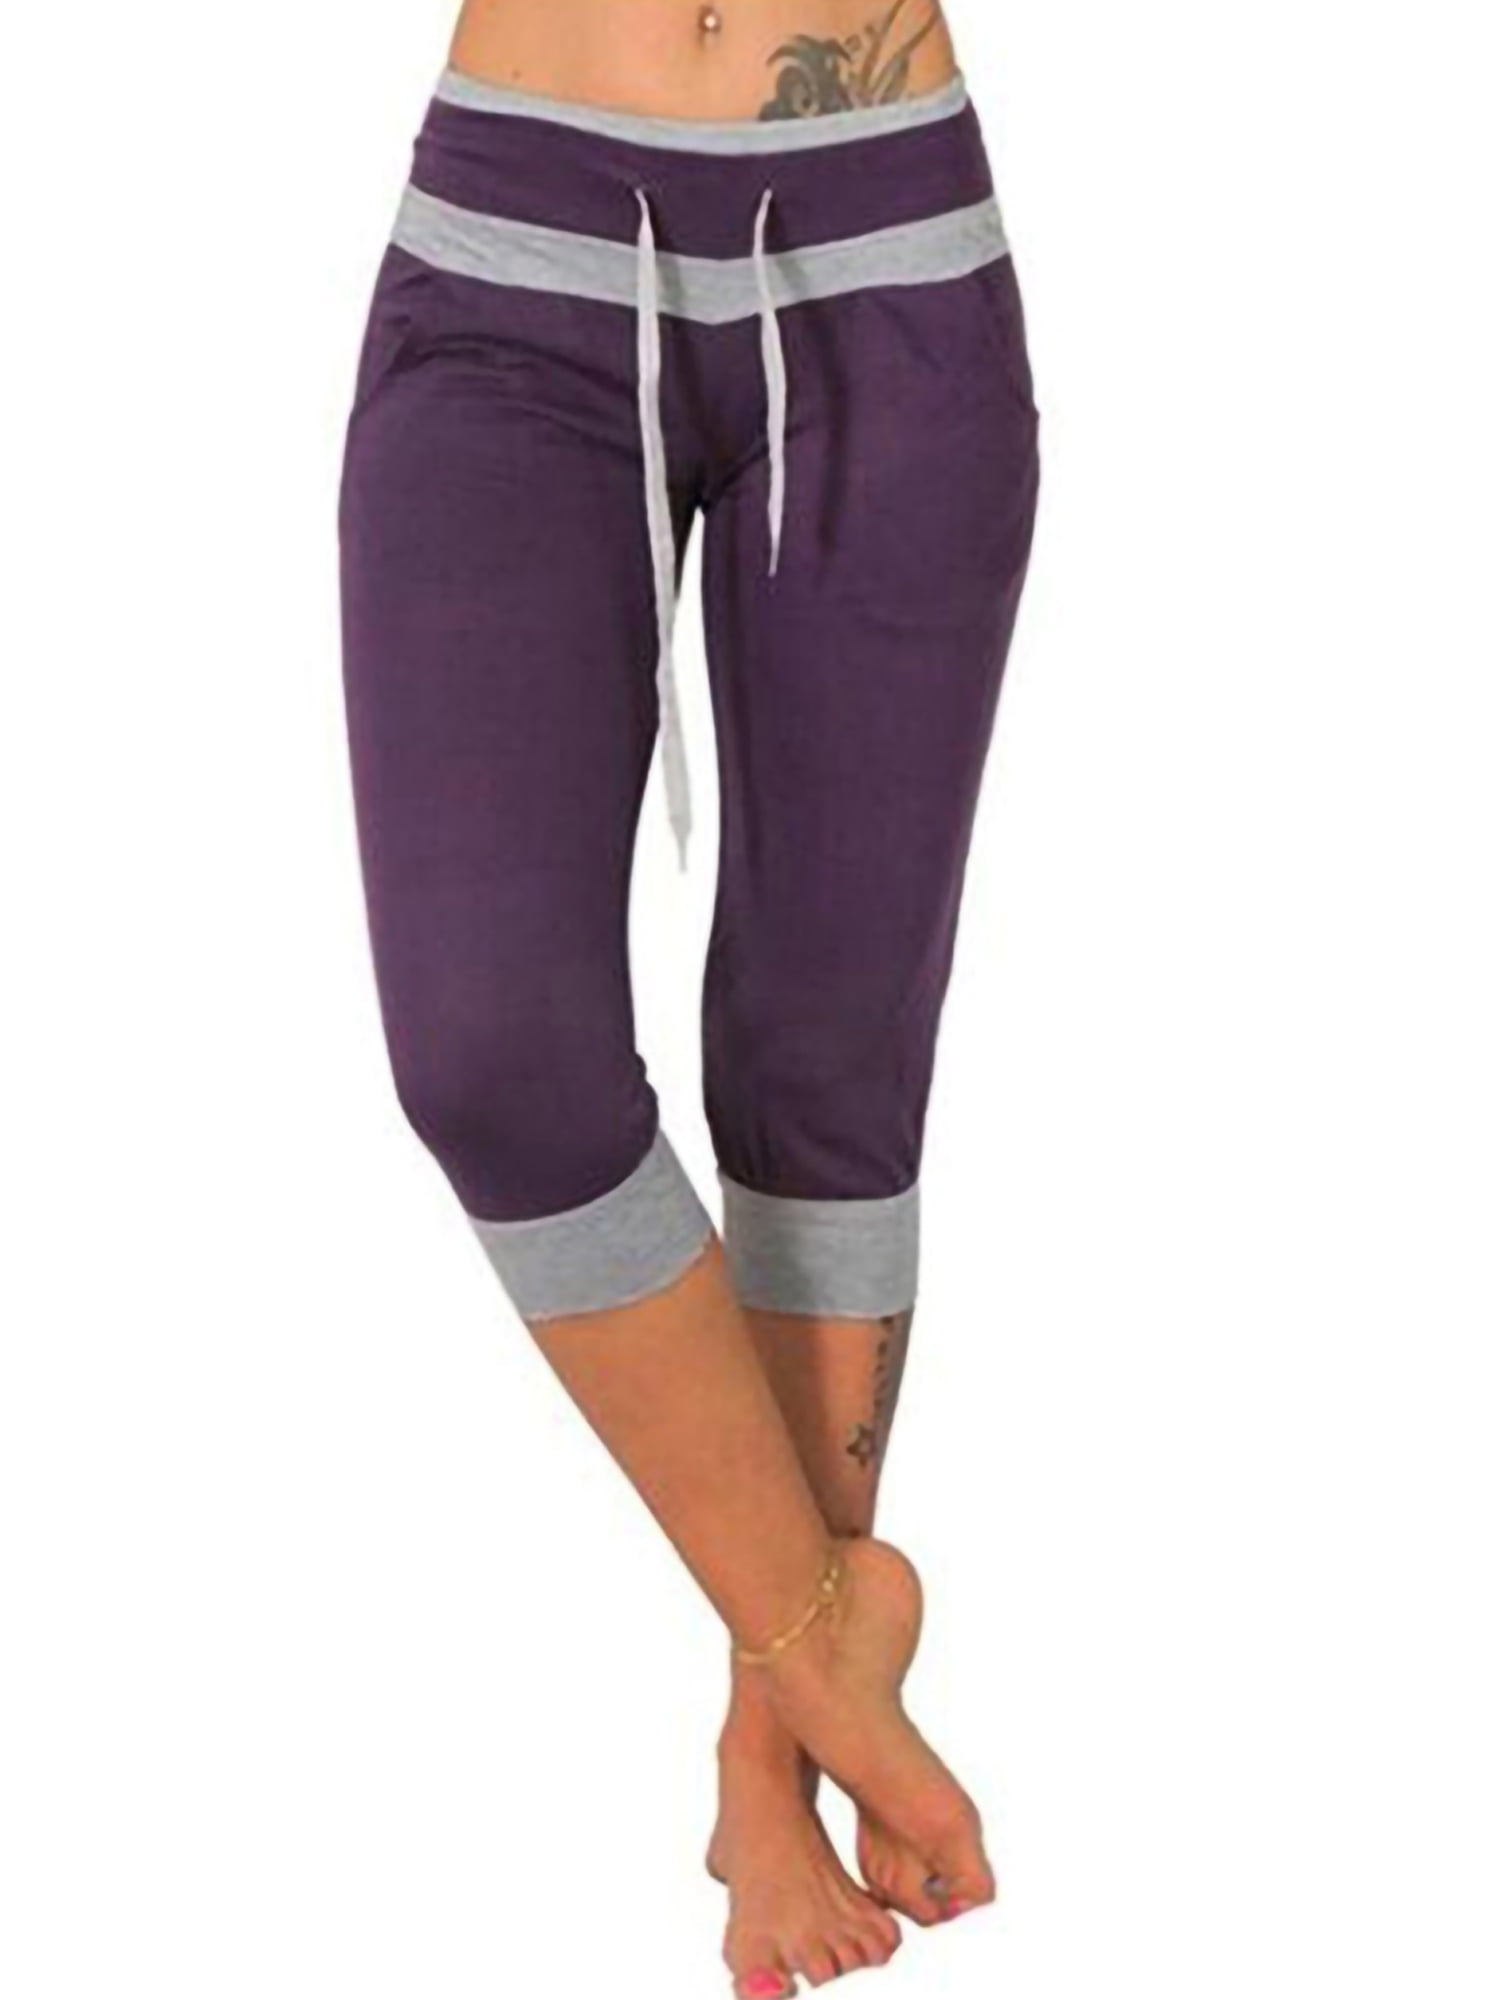 OOEOO Yoga Pants Women Workout Capris High Waist Running Mesh Patchwork Leggings 